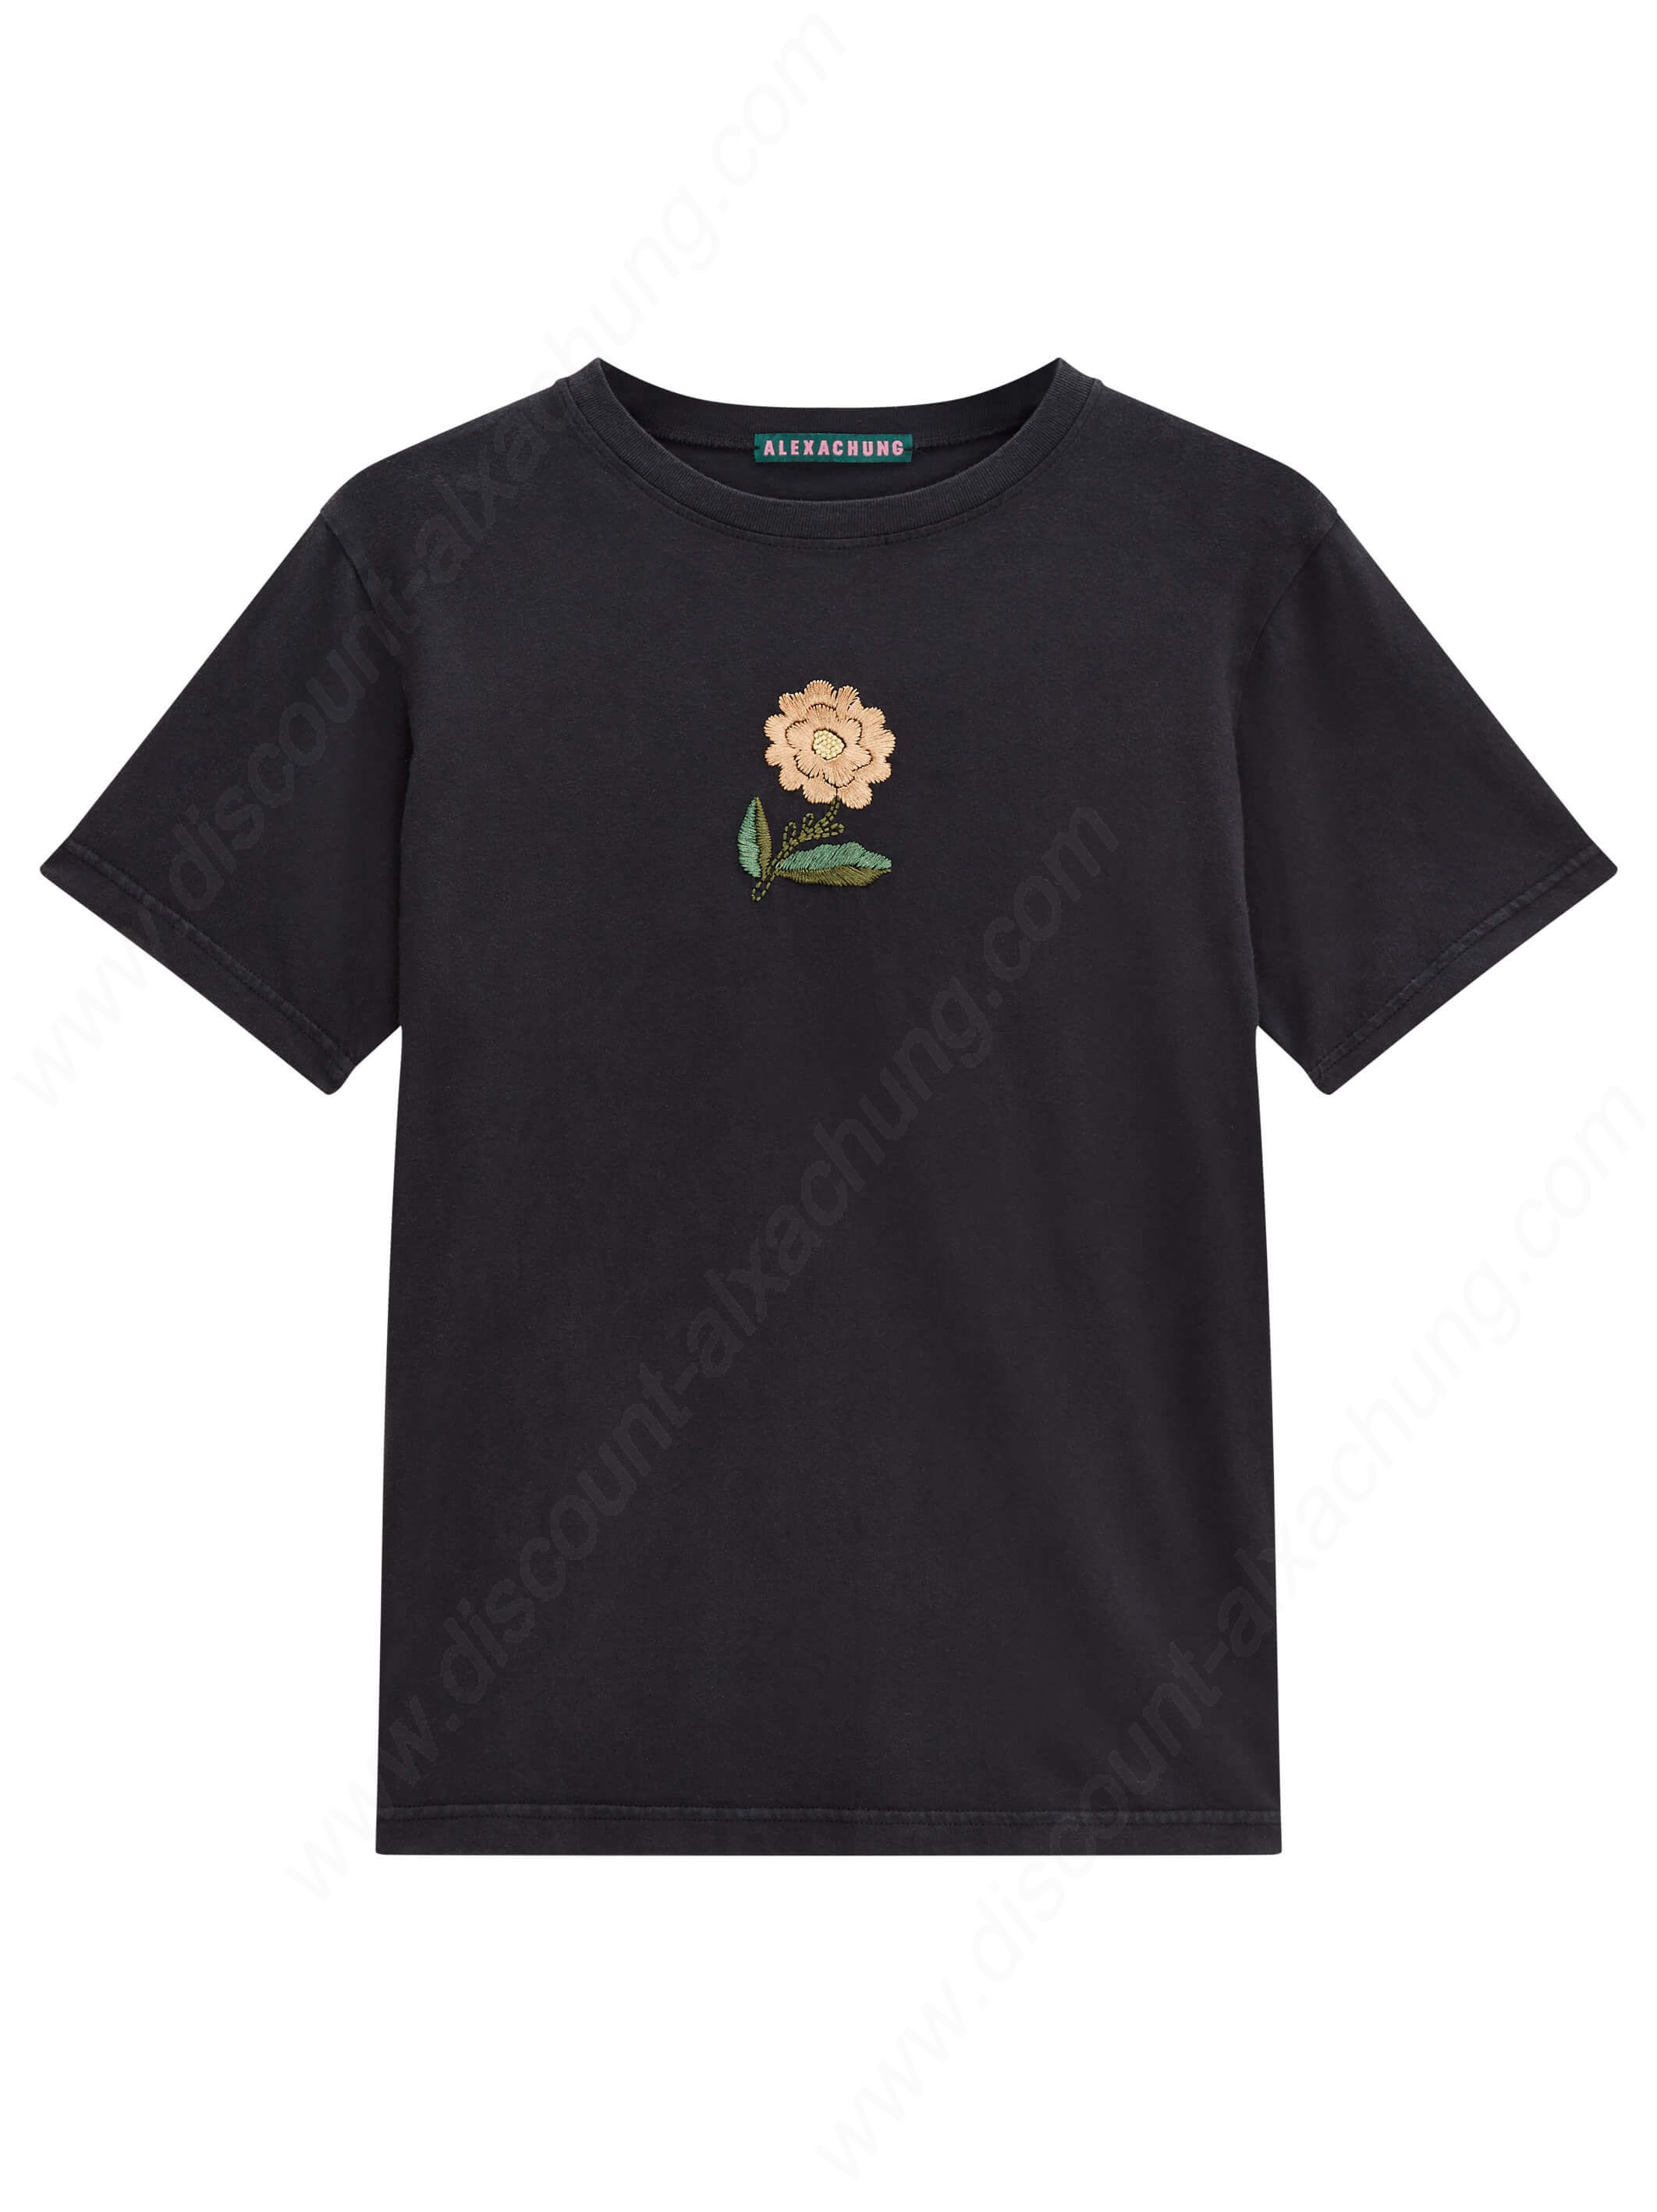 Alexachung Embroidered Flower Shirt - Alexachung Embroidered Flower Shirt